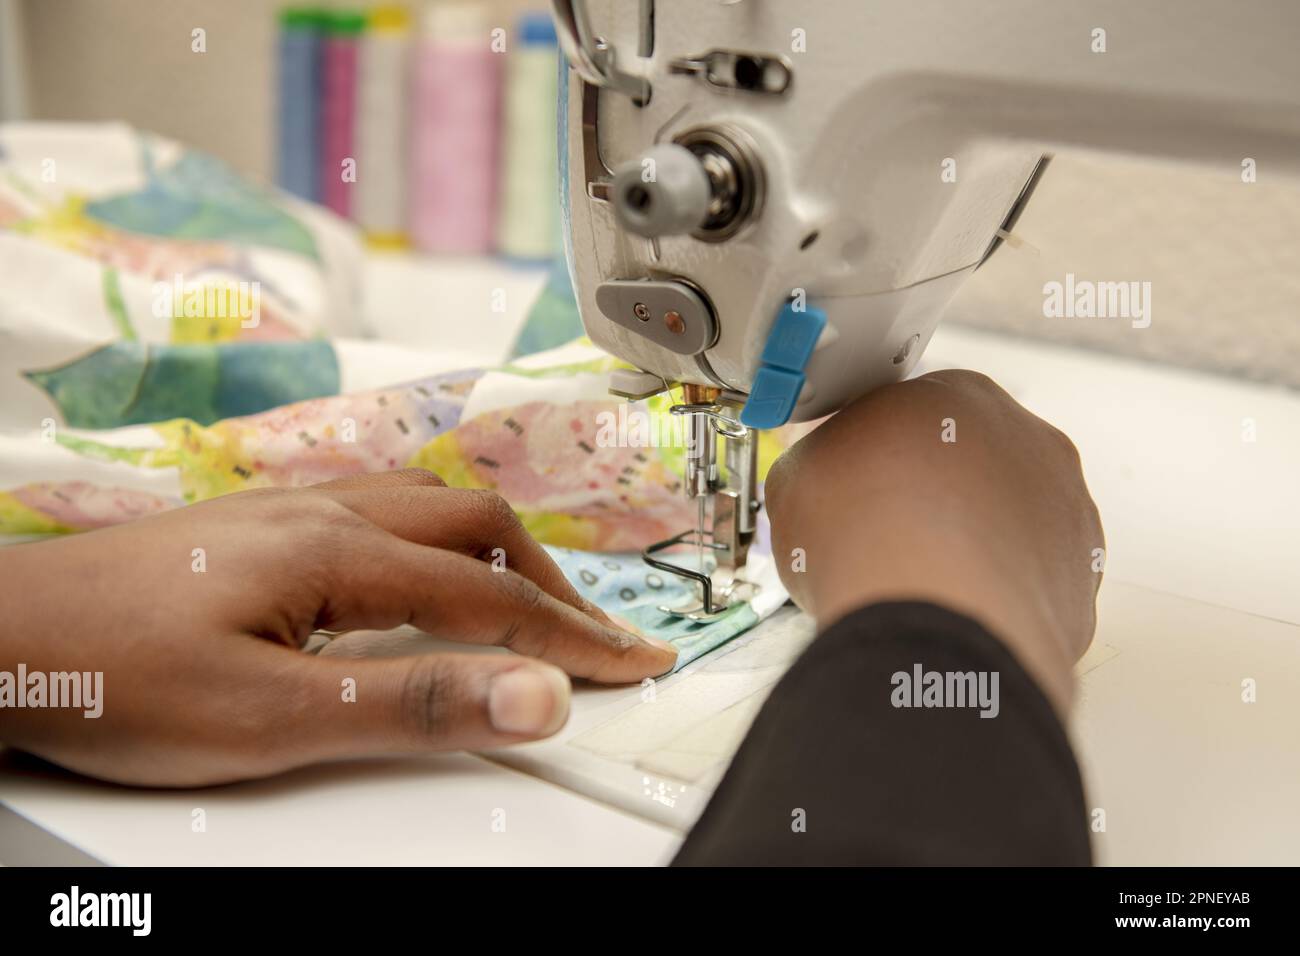 Mani di una donna dai capelli scuri che utilizza una macchina da cucire industriale Foto Stock